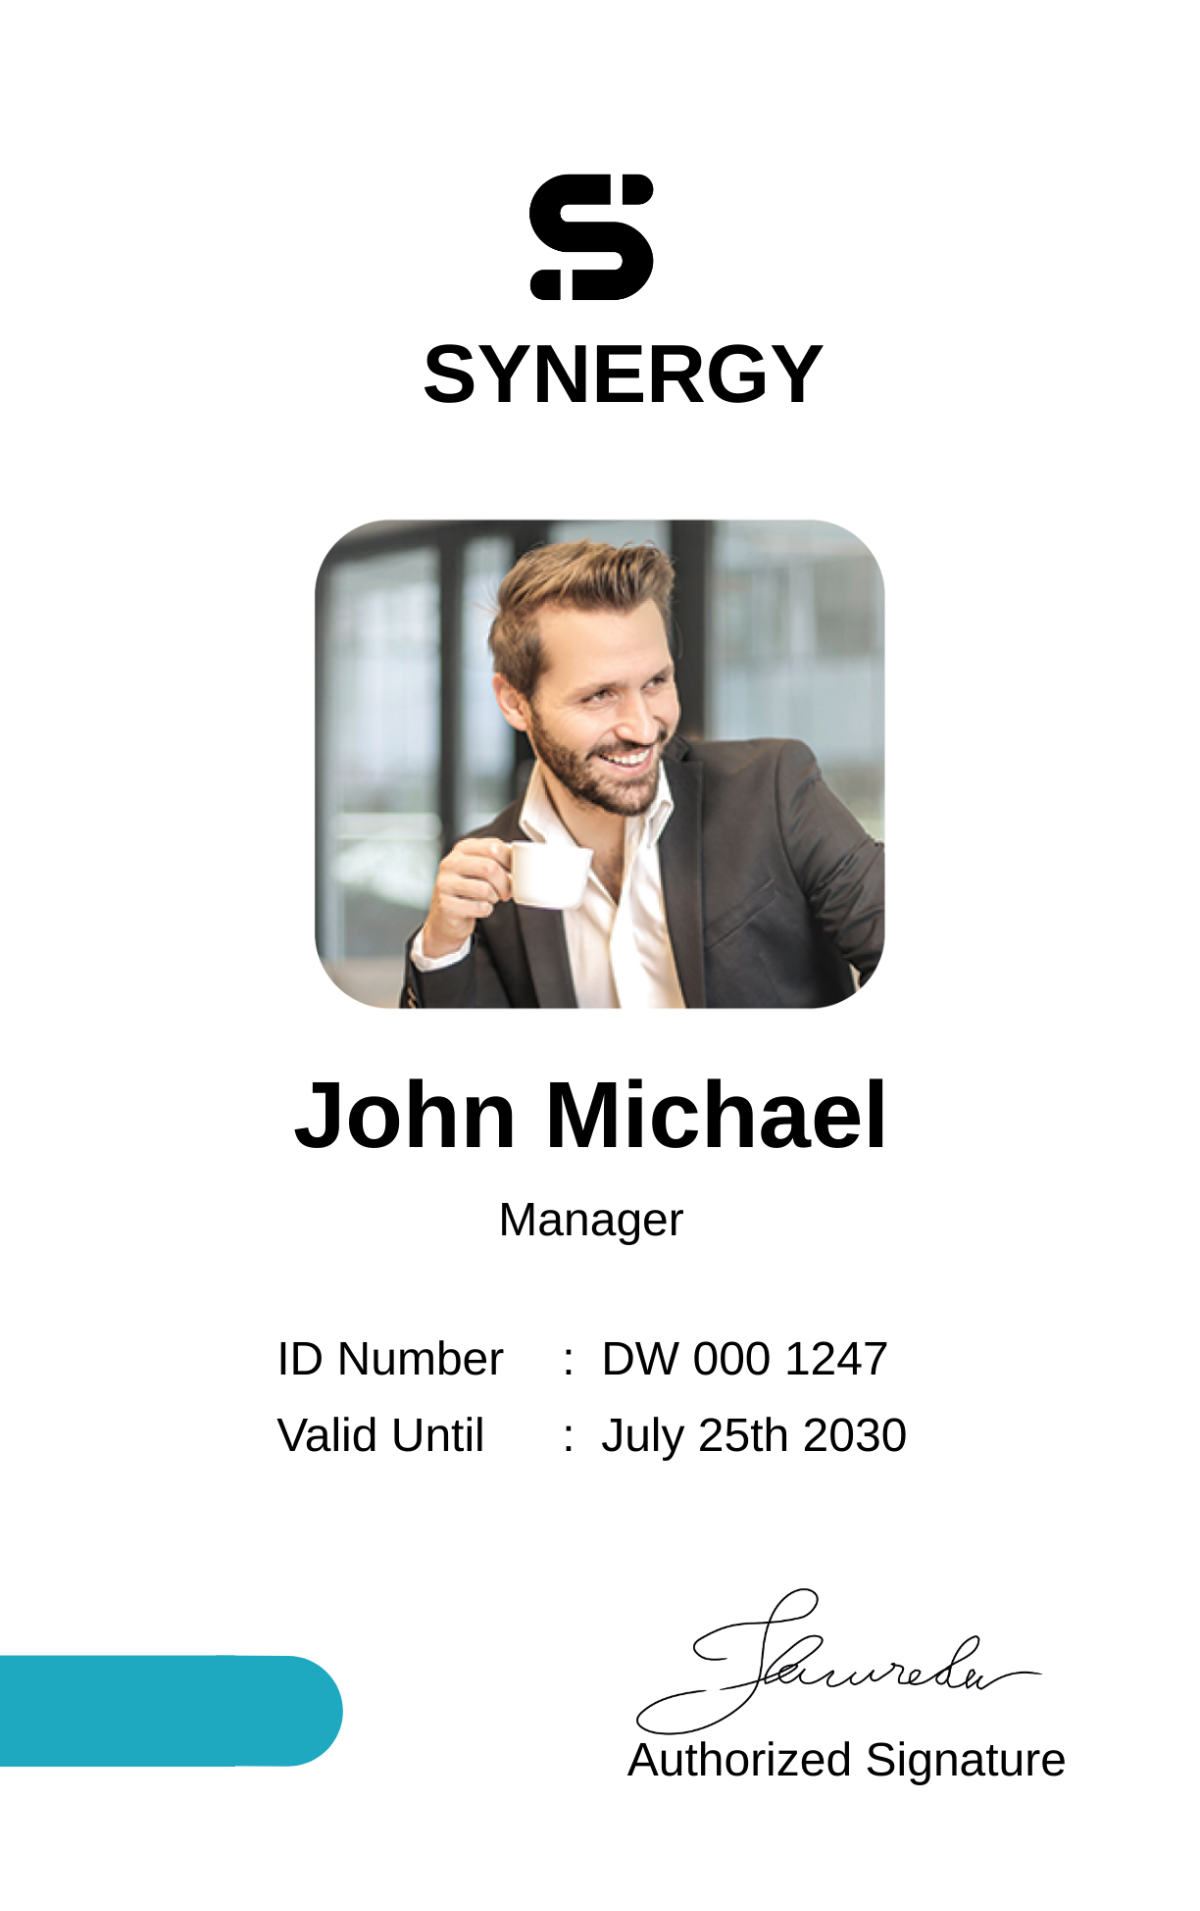 Digital Marketing Company Agency ID Card